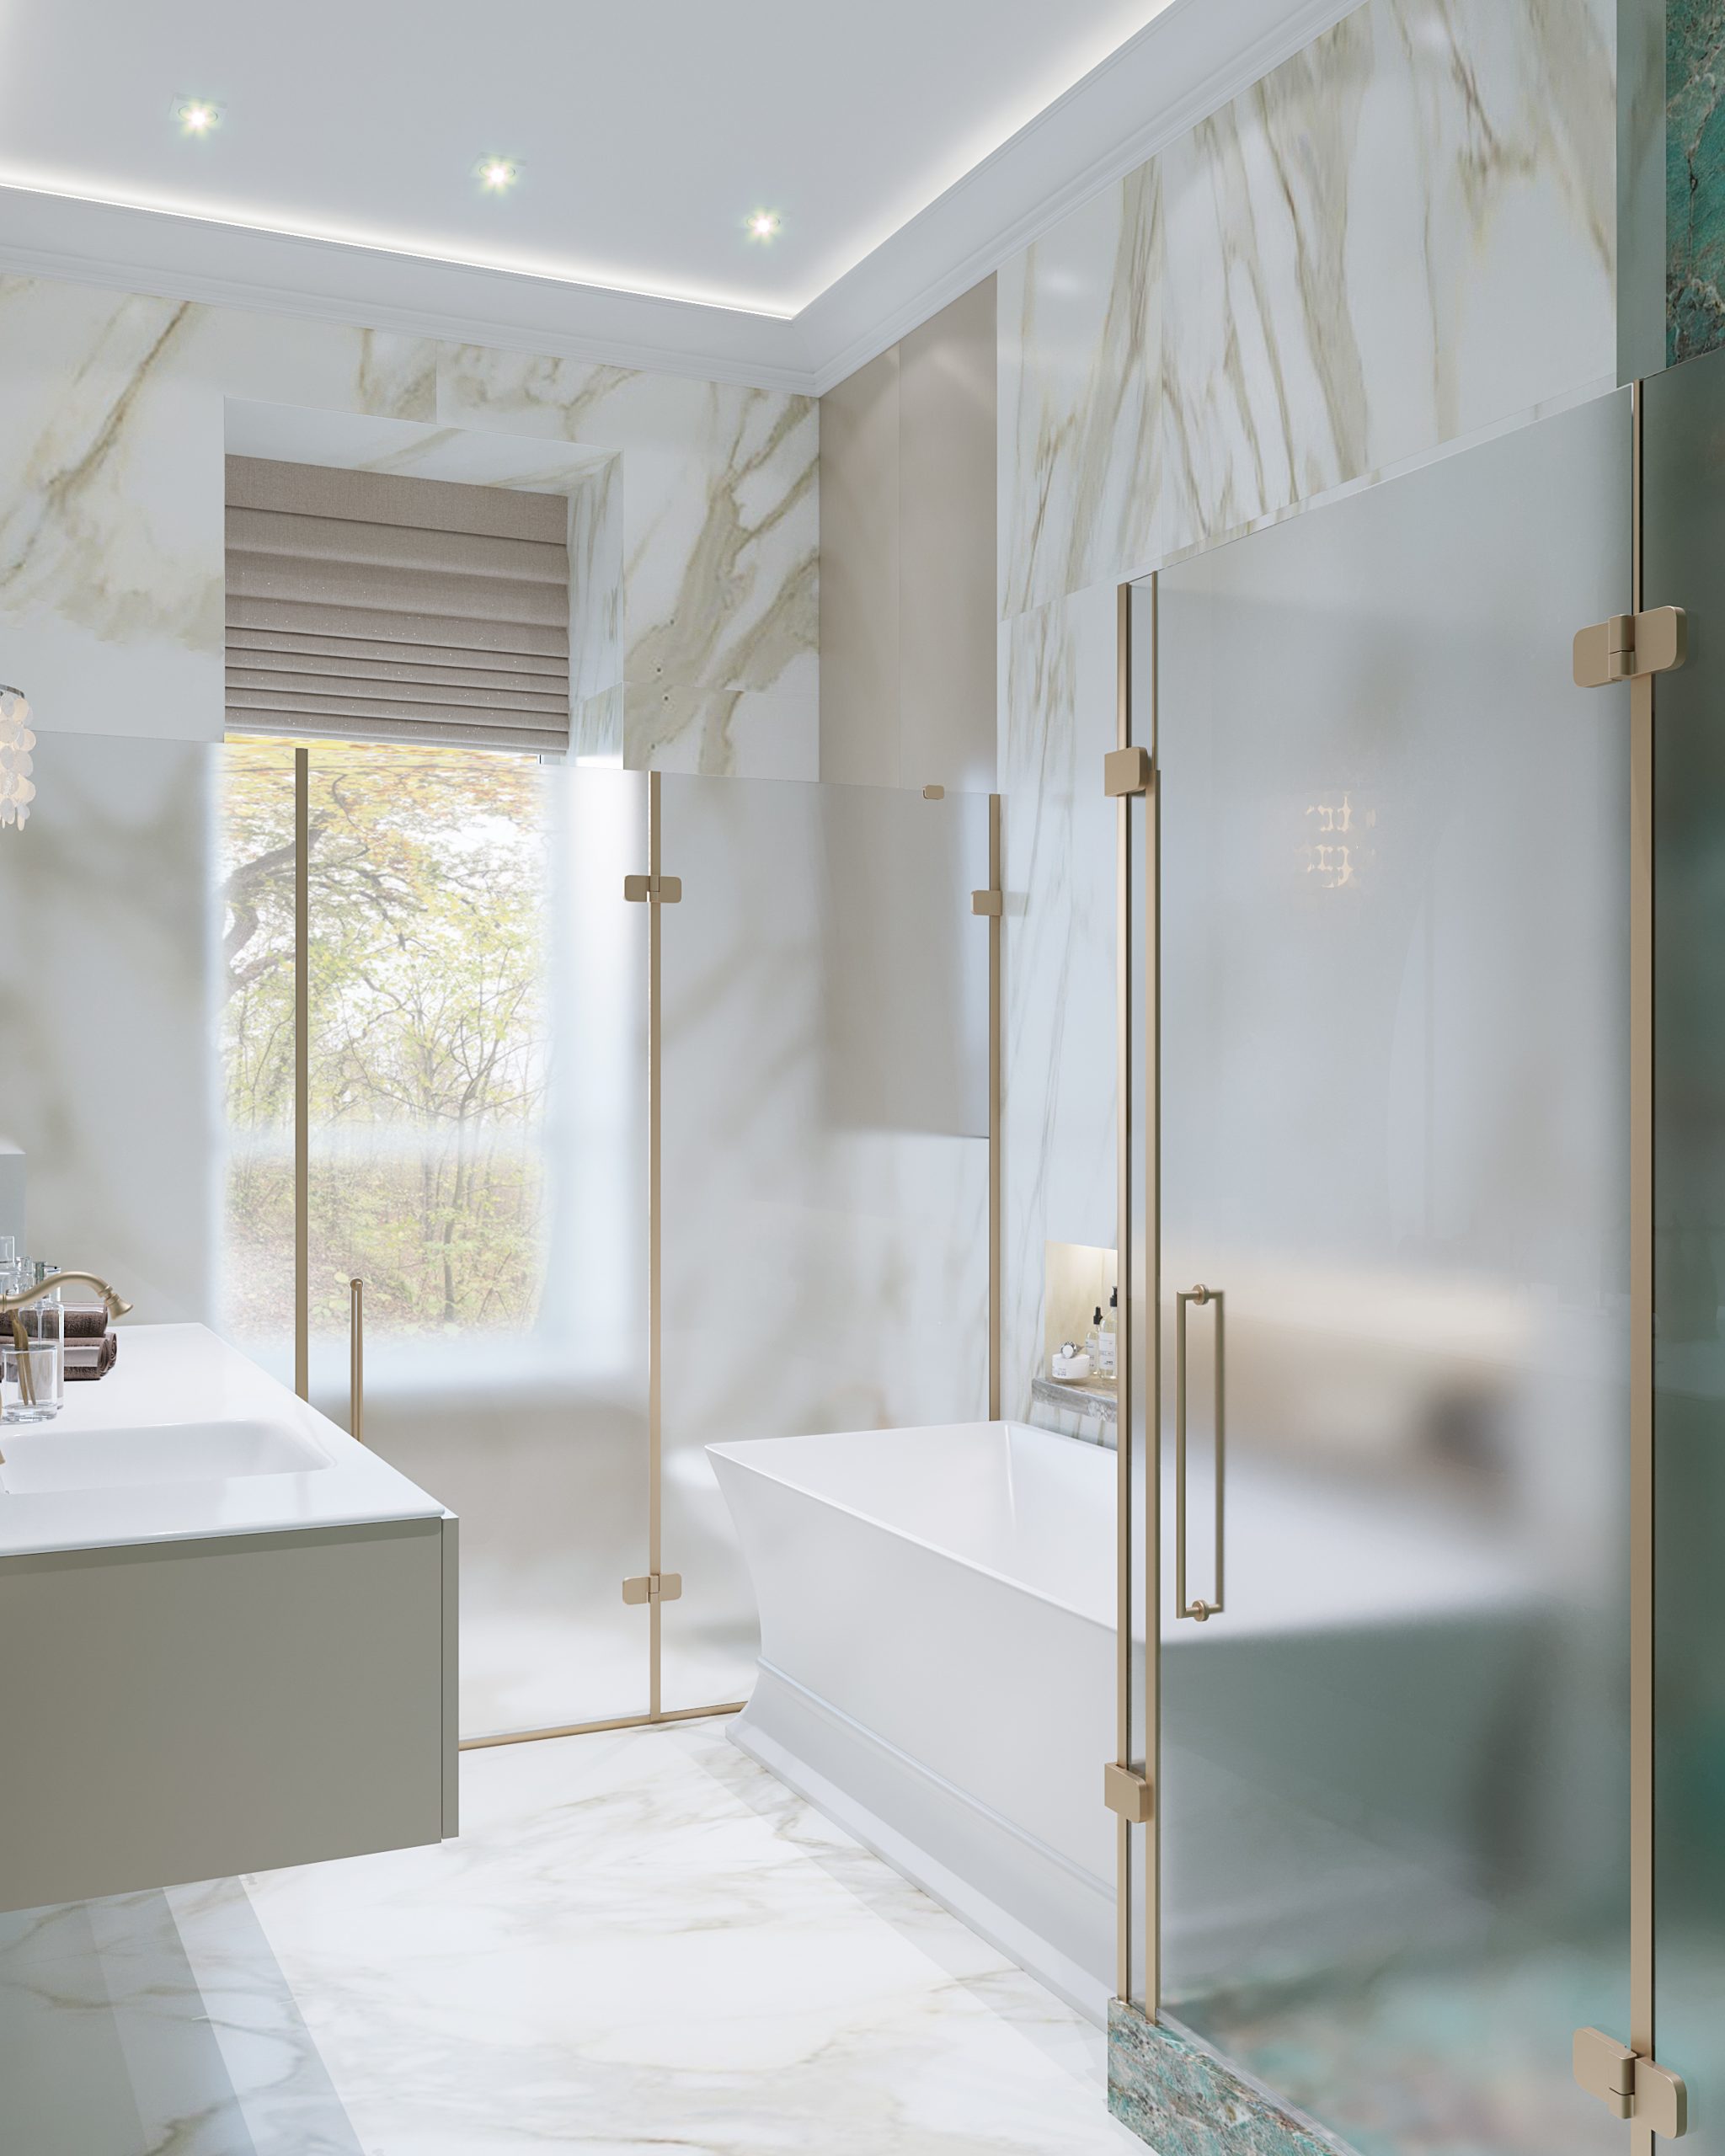 Мрамор и керамогранит в светлых тонах в дизайн-проекте ванной комнаты в элитной квартире